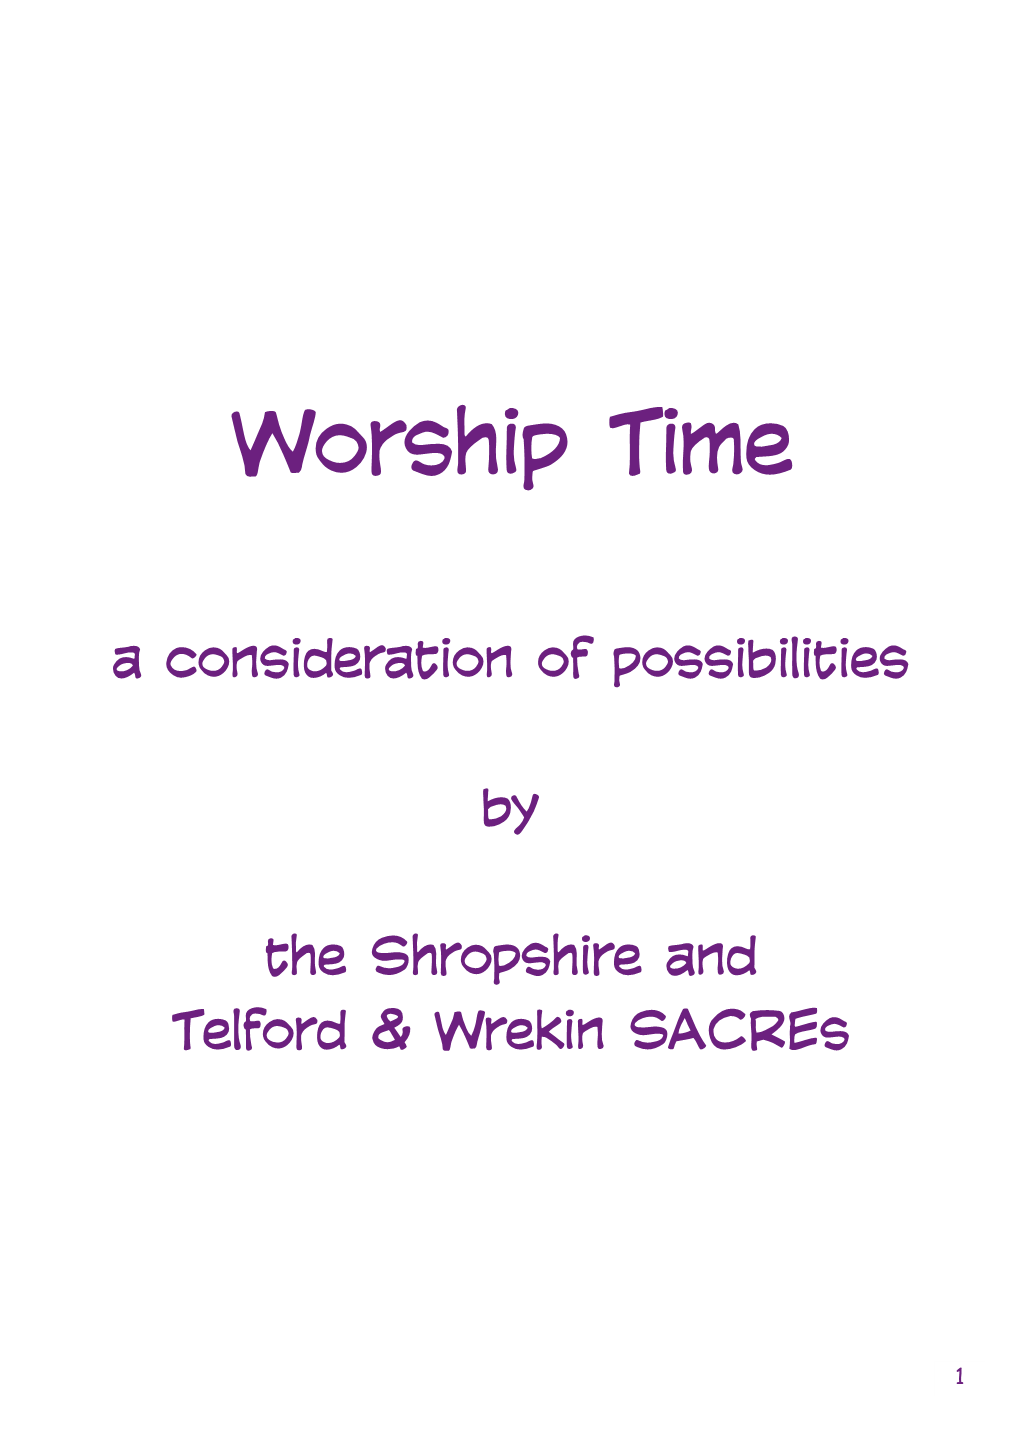 Worship Time LG